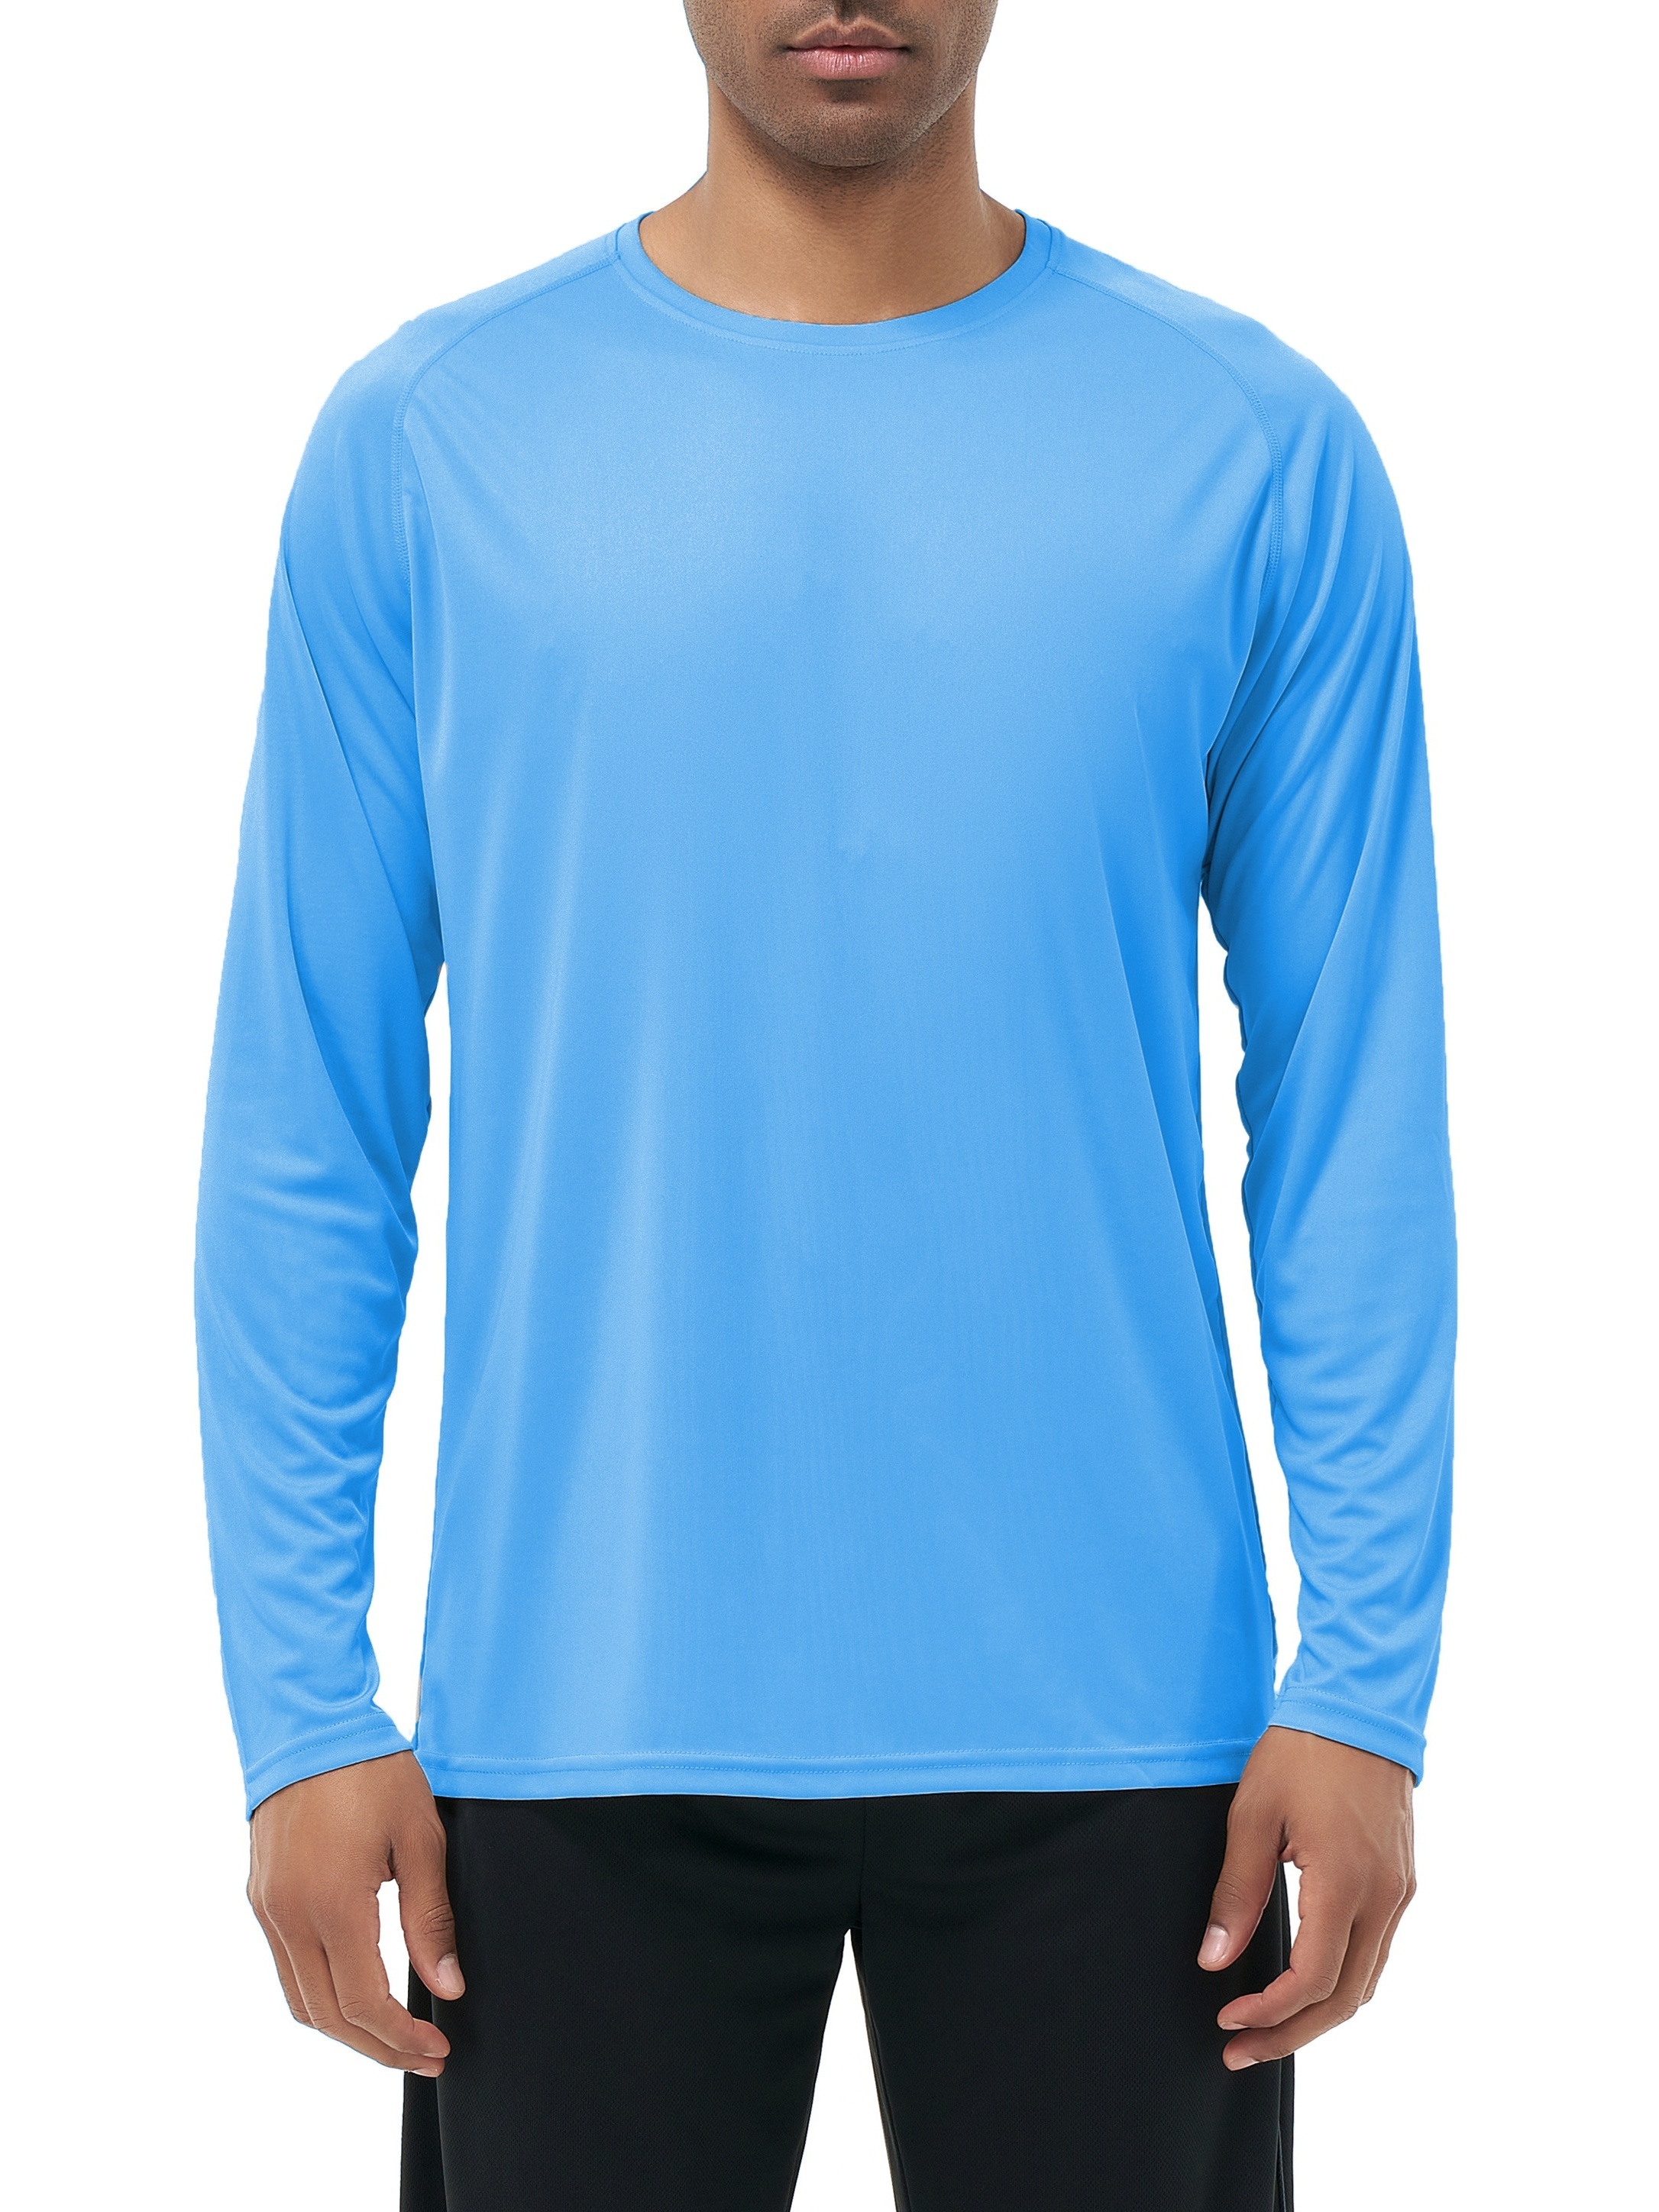 Sun Shirt - SPF/UPF 30+ Sun Protection Lightweight Long Sleeve Shirt Men's, Slate / XXL